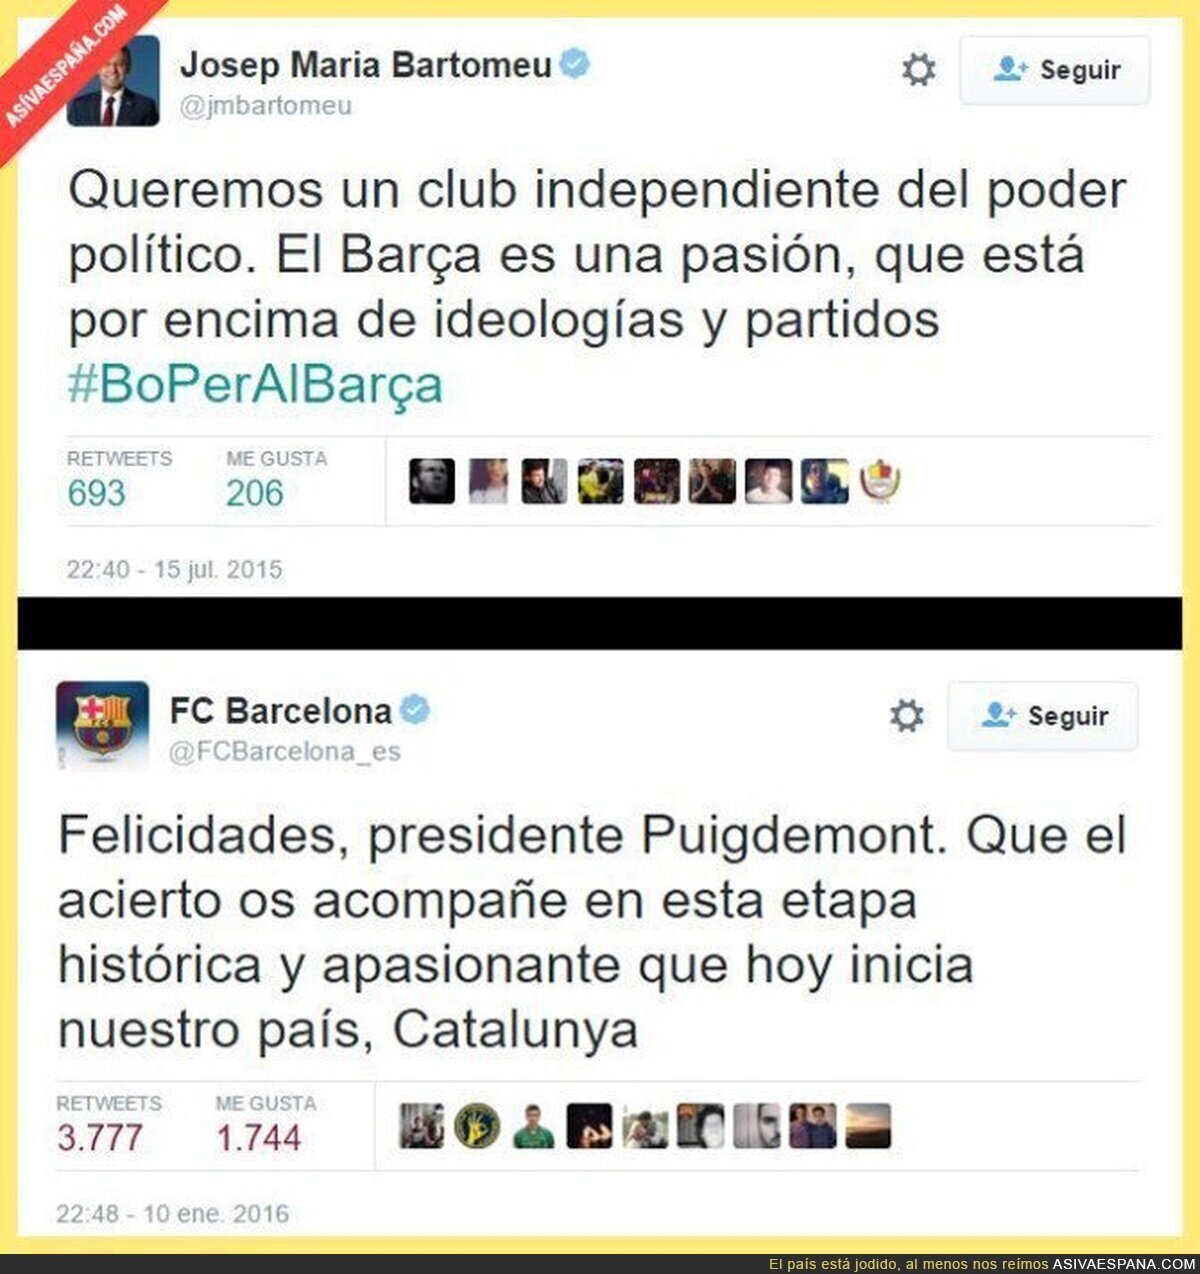 El Barça, politizado 100%